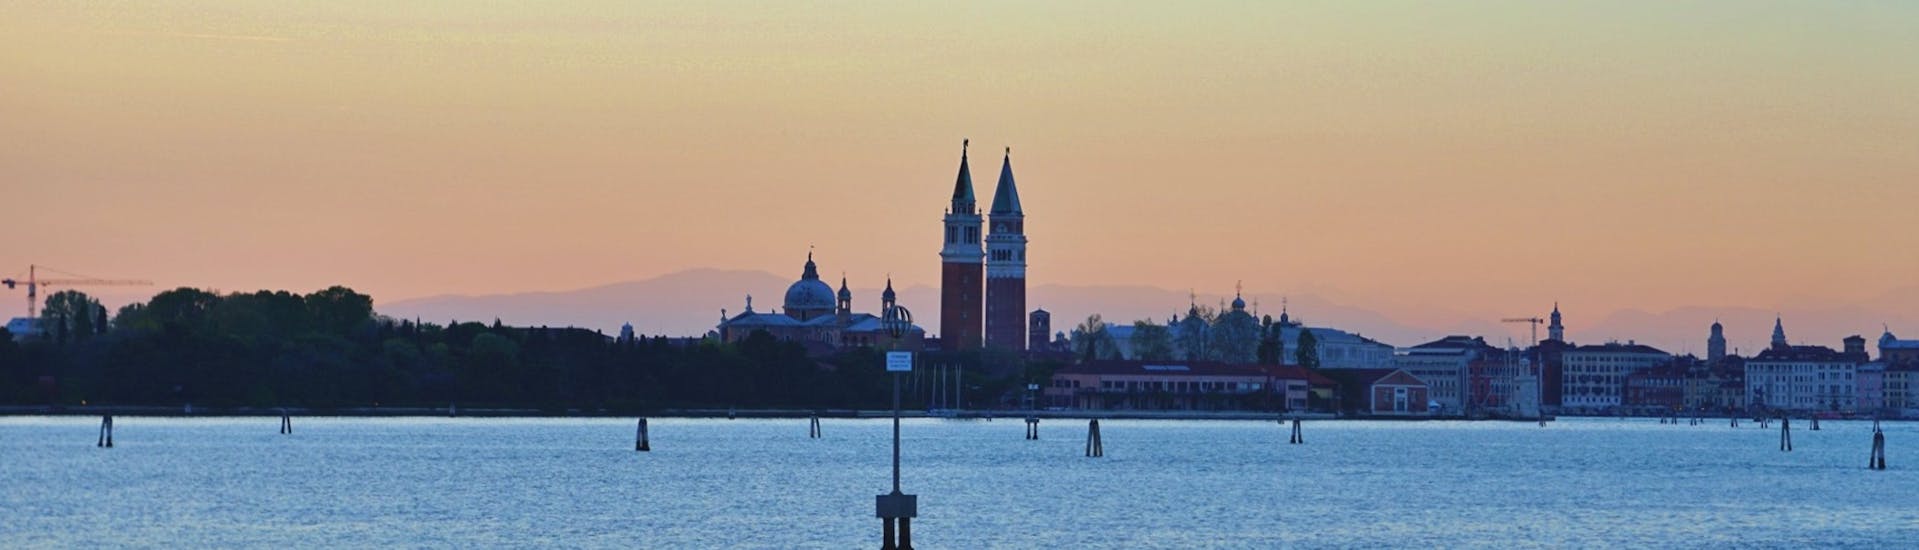 Uitzicht op Venetië vanaf de boot bij zonsondergang tijdens de Sunset Boat Trip in Venetië met Il Doge di Venezia.